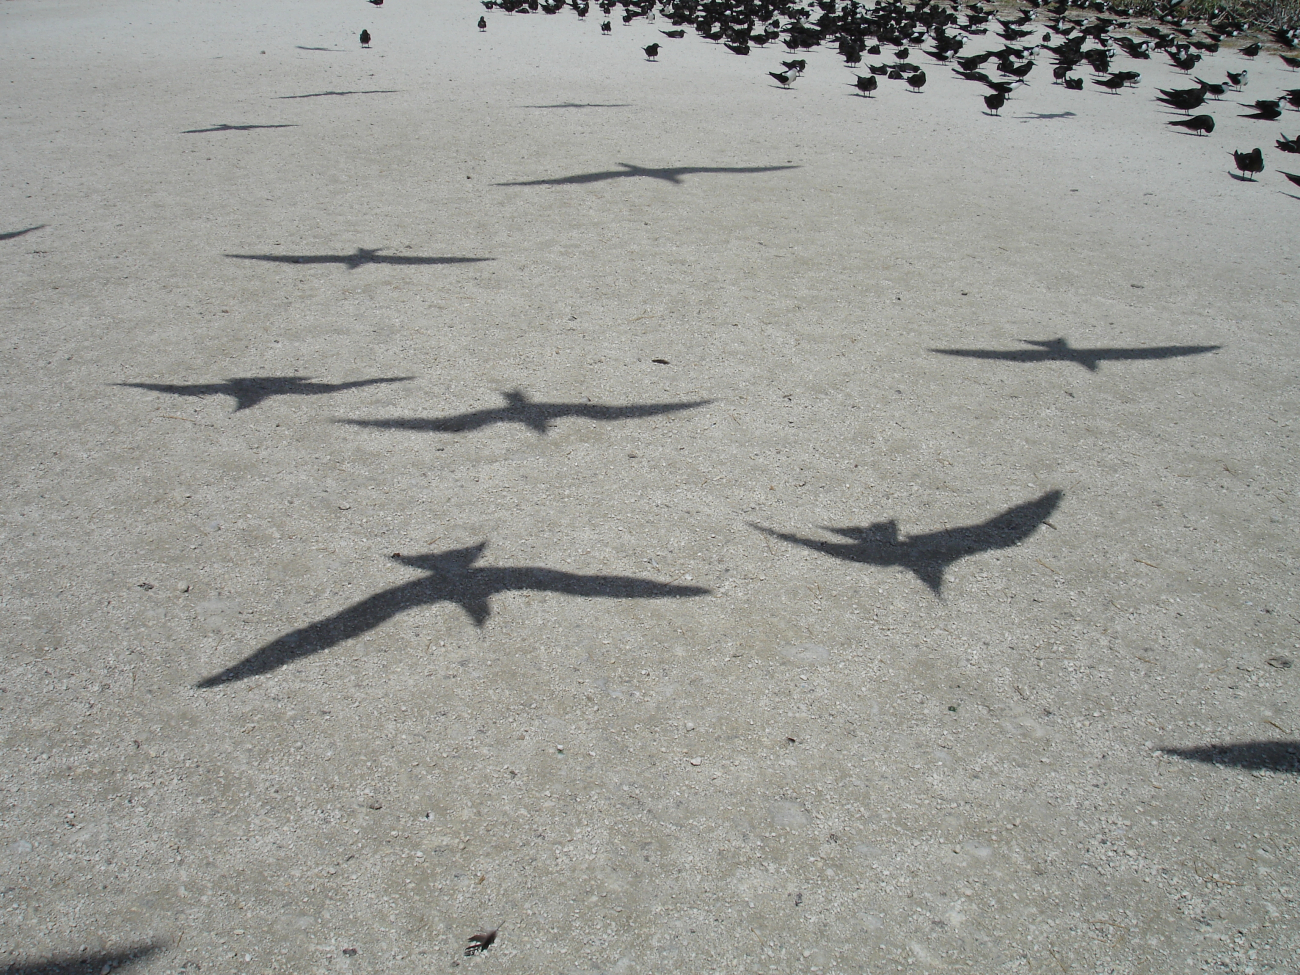 Bird shadows on the sand